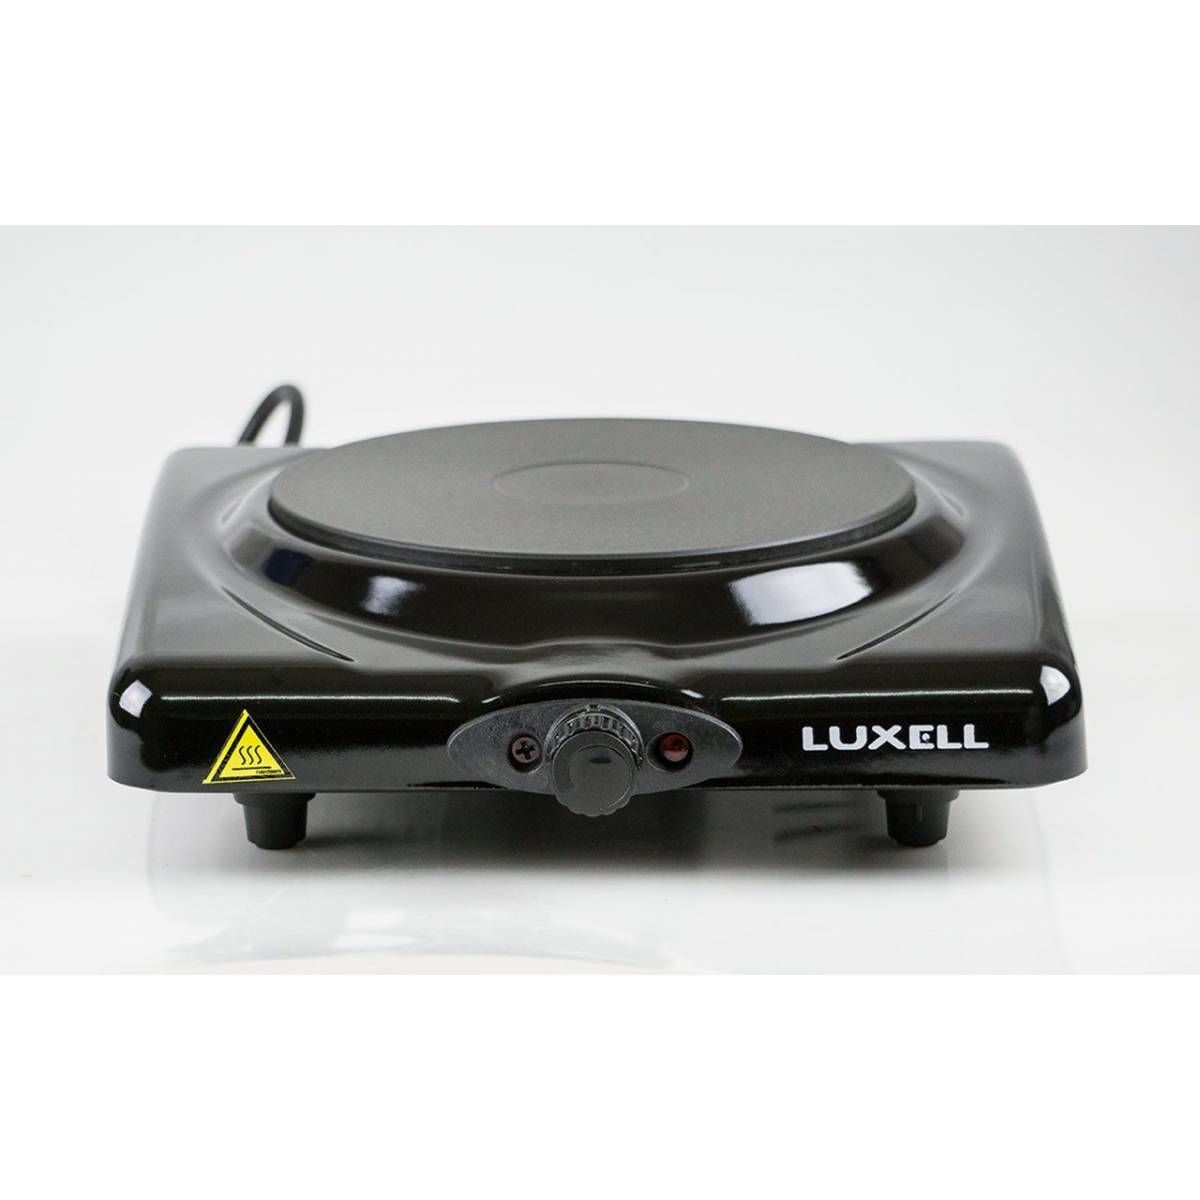 Luxell LX-7115 Set Üstü Ocak Siyah